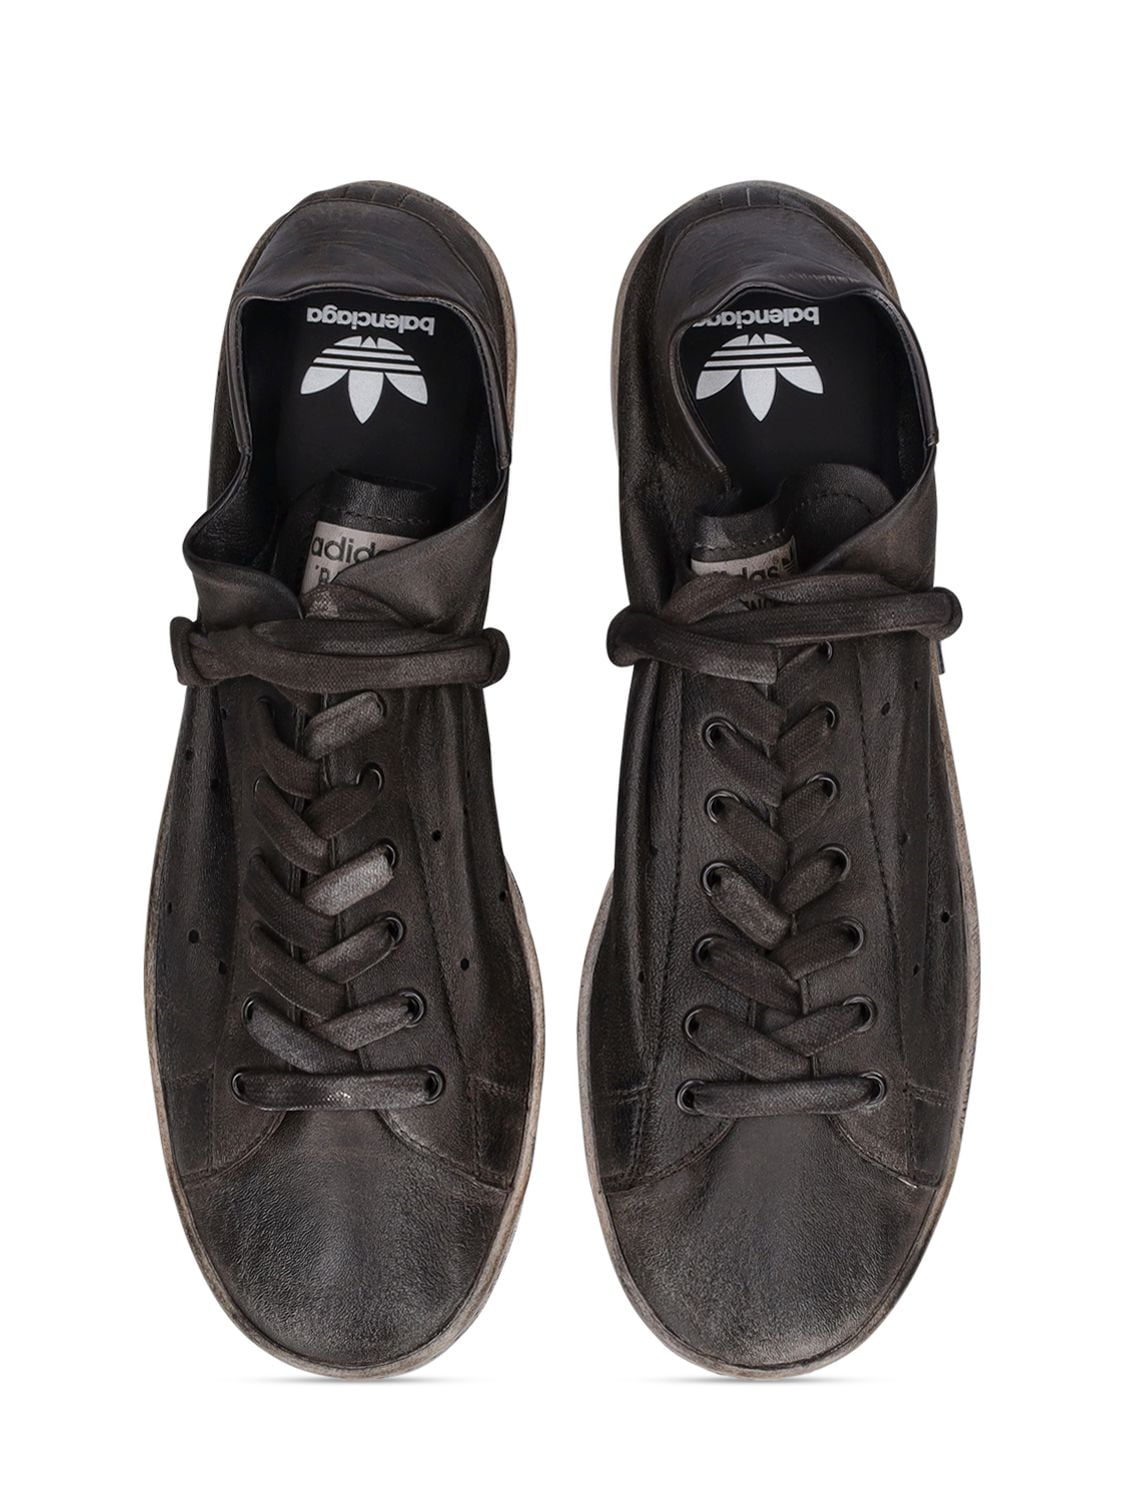 Shop Balenciaga Adidas Stan Smith Sneakers In Black